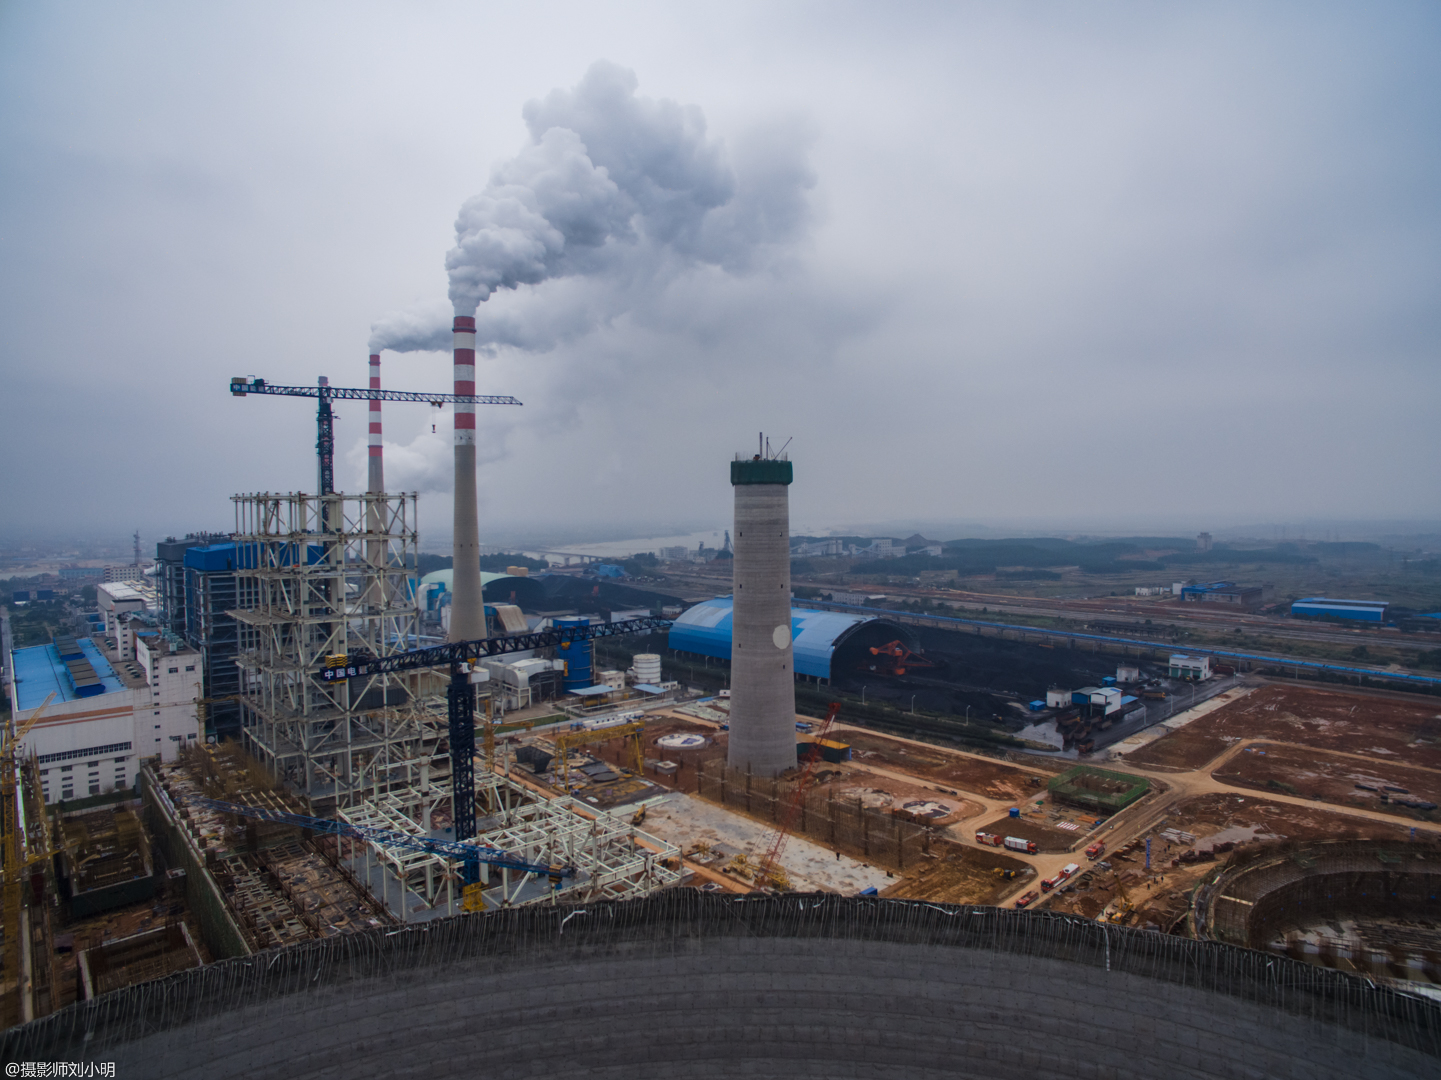 2016江西丰城发电厂“11·24”冷却塔施工平台坍塌特别重大事故 – 古哈科技